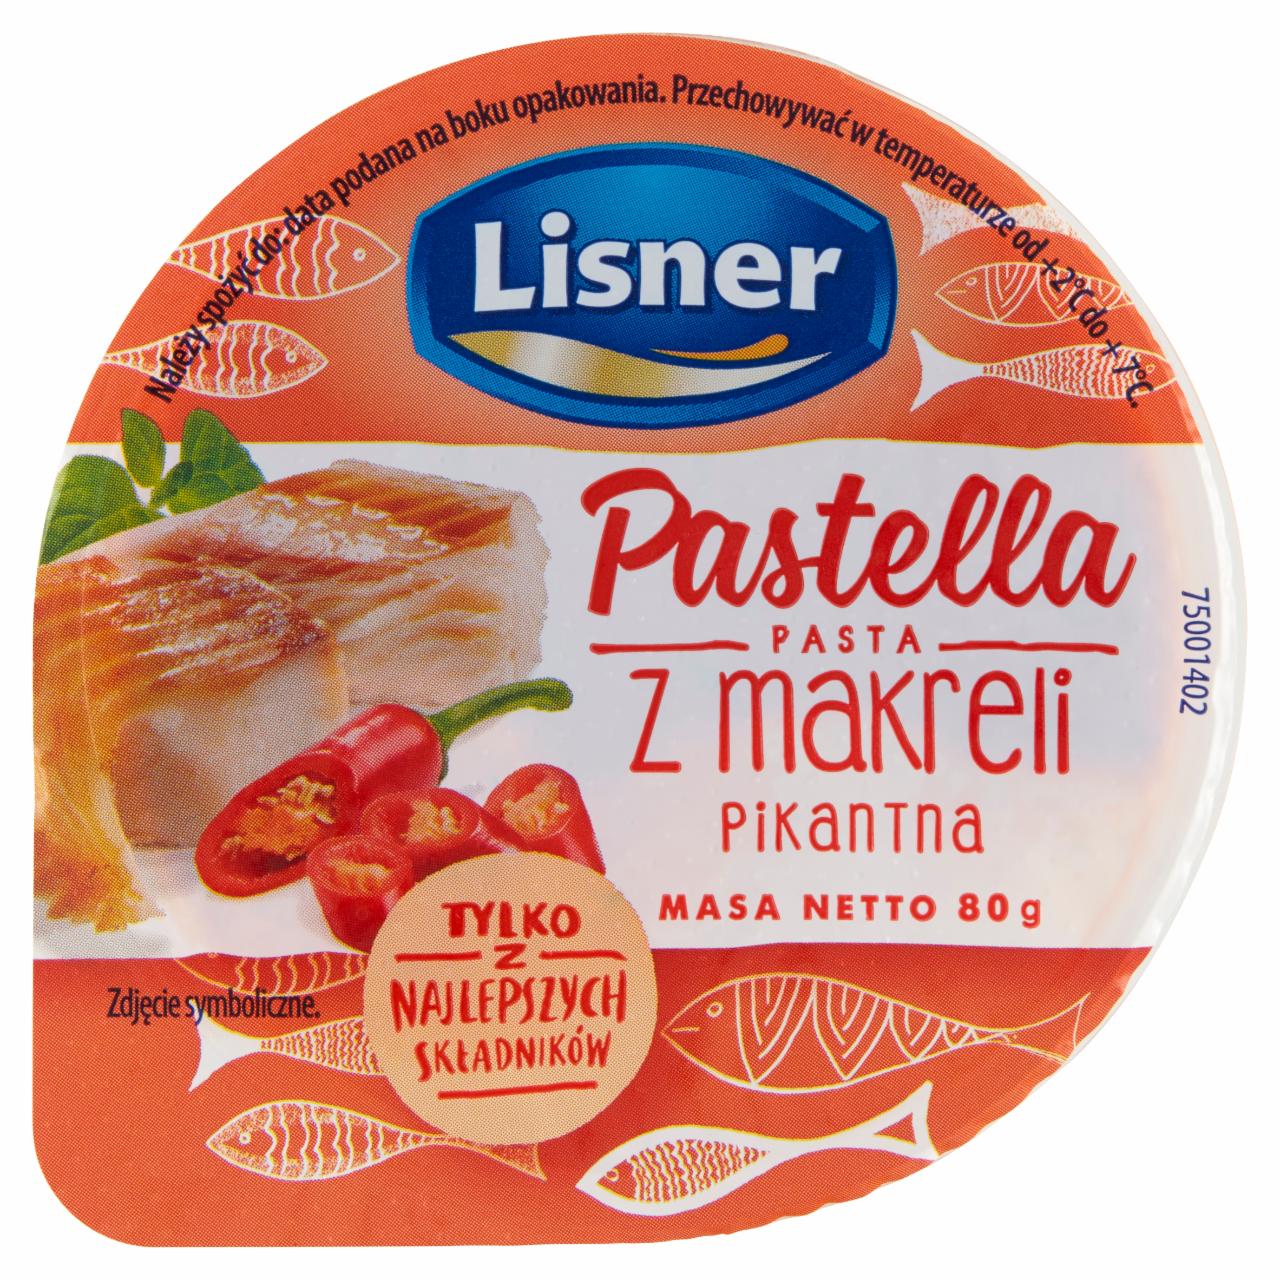 Zdjęcia - Lisner Pastella Pasta z makreli pikantna 80 g